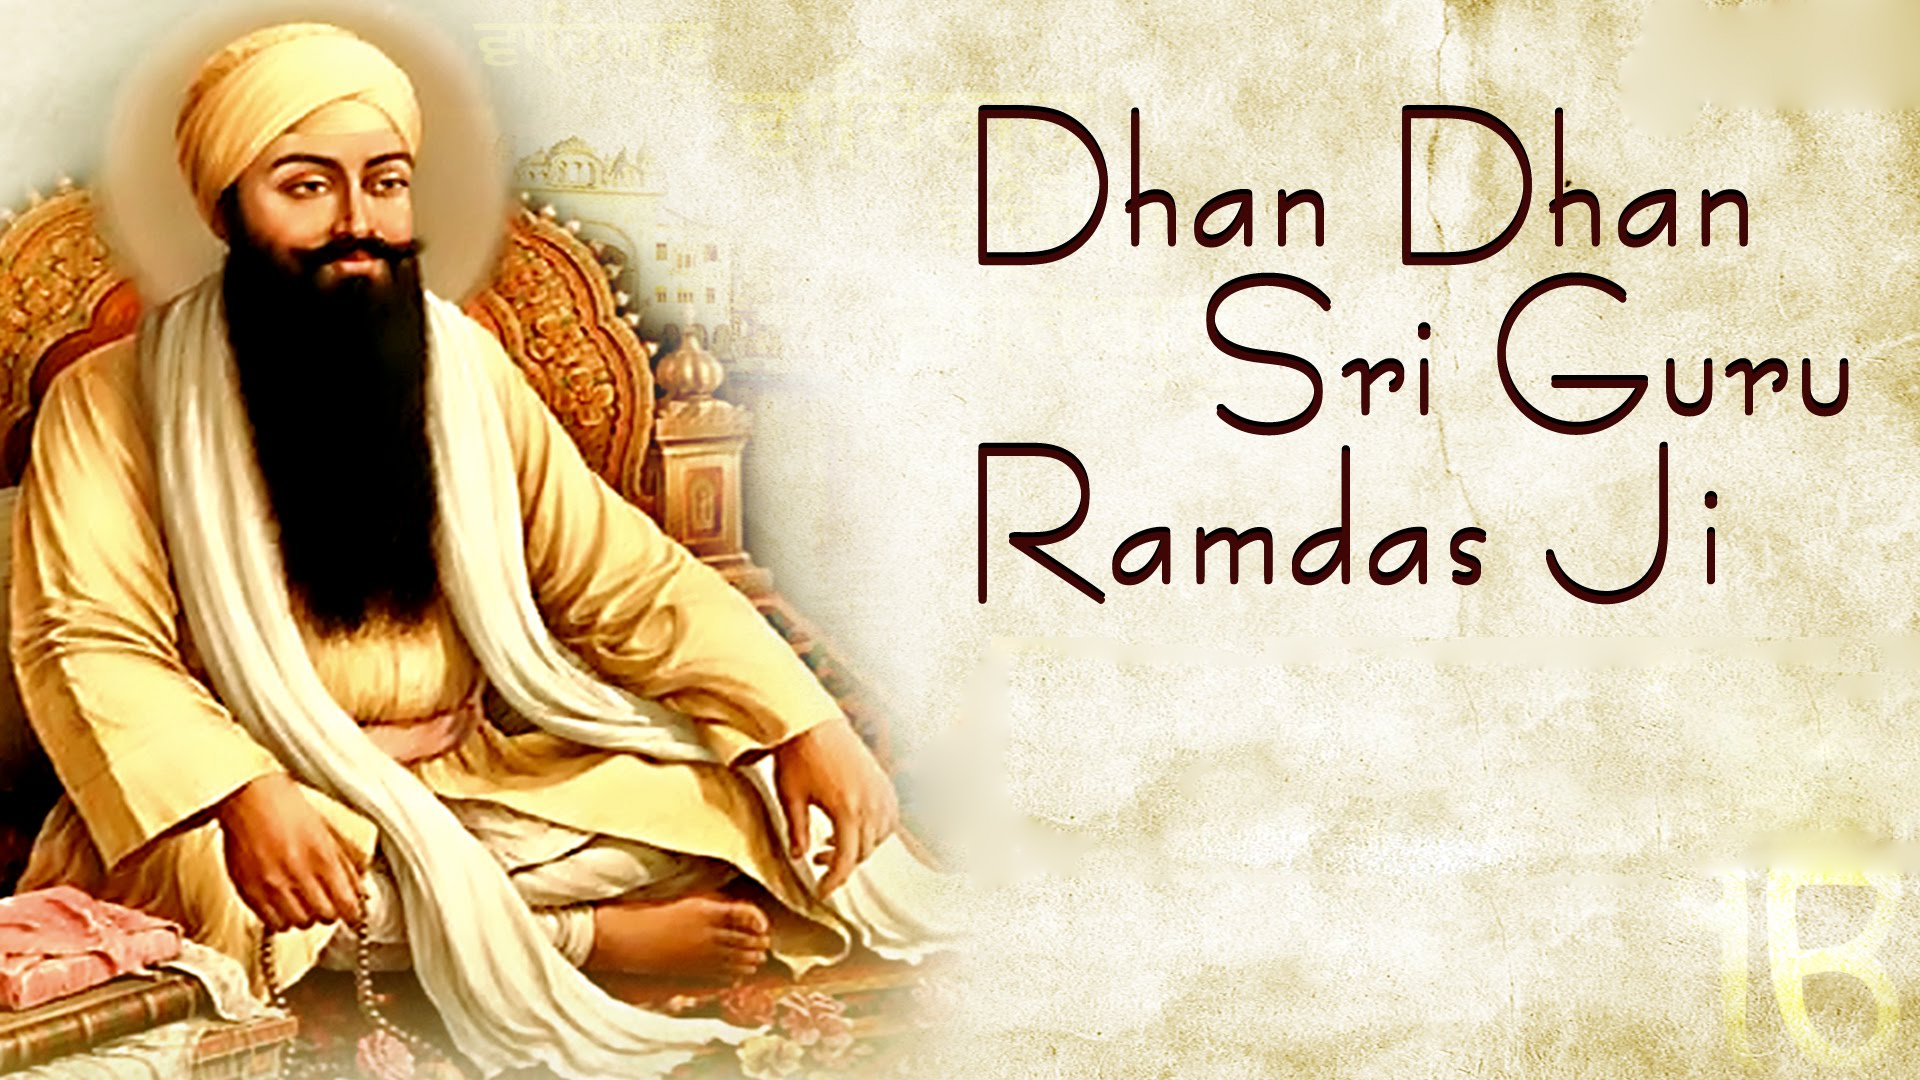 Shri Guru Ram Das Ji Images Download